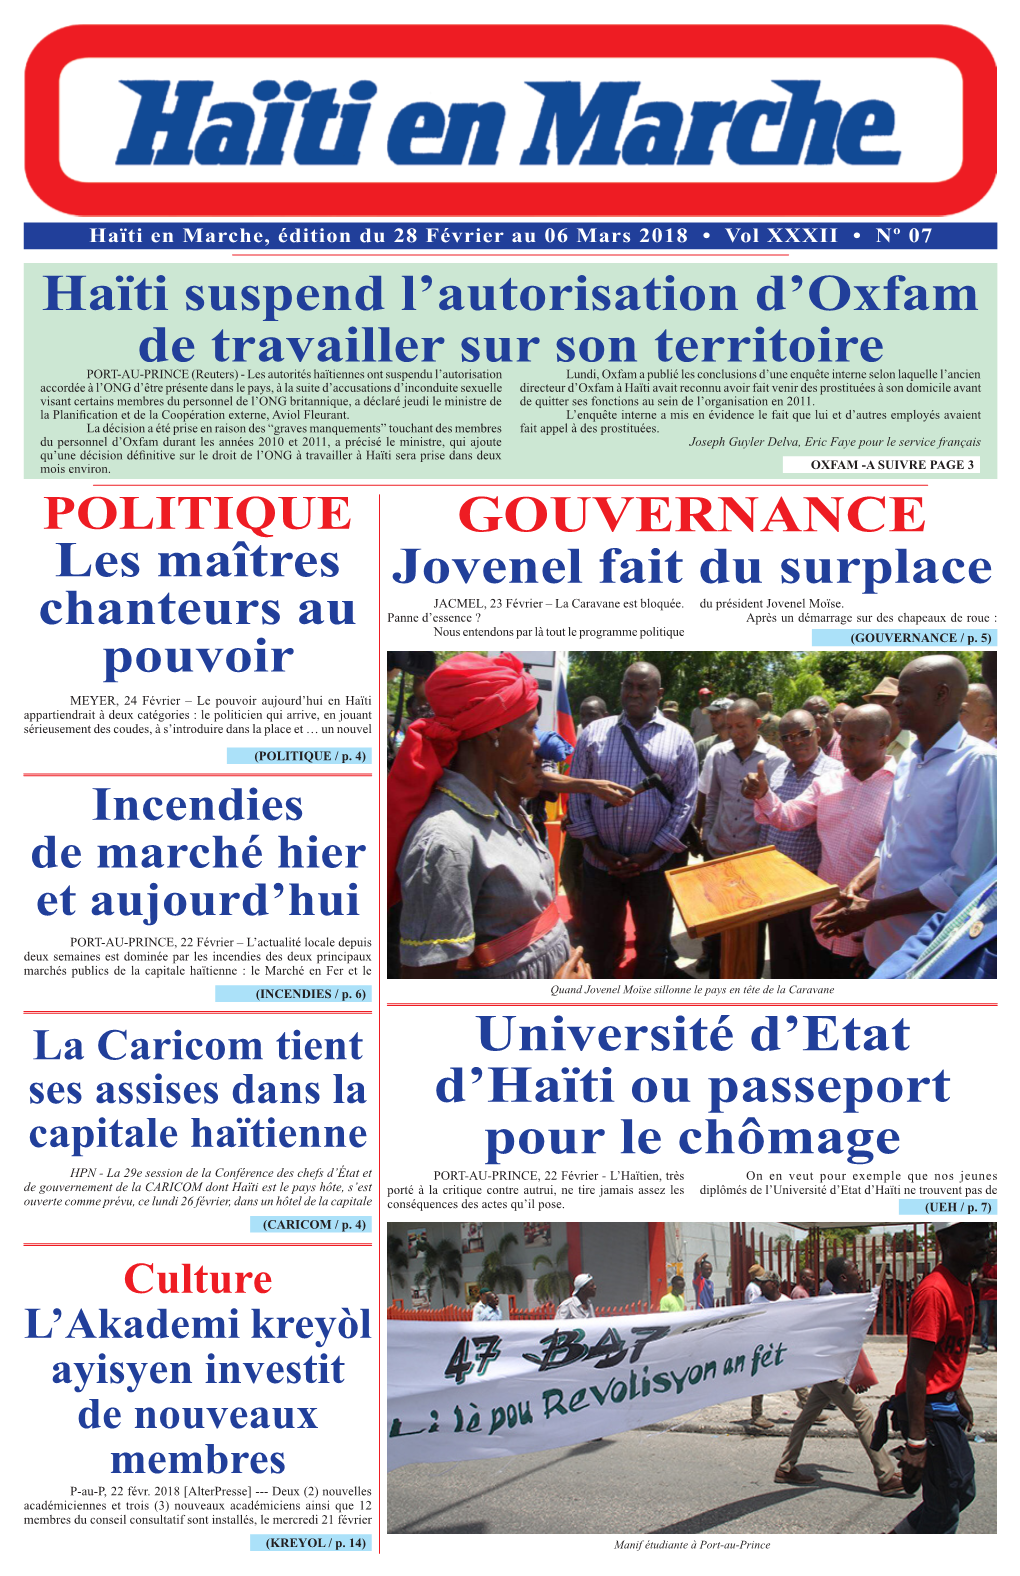 GOUVERNANCE Jovenel Fait Du Surplace Haïti Suspend L